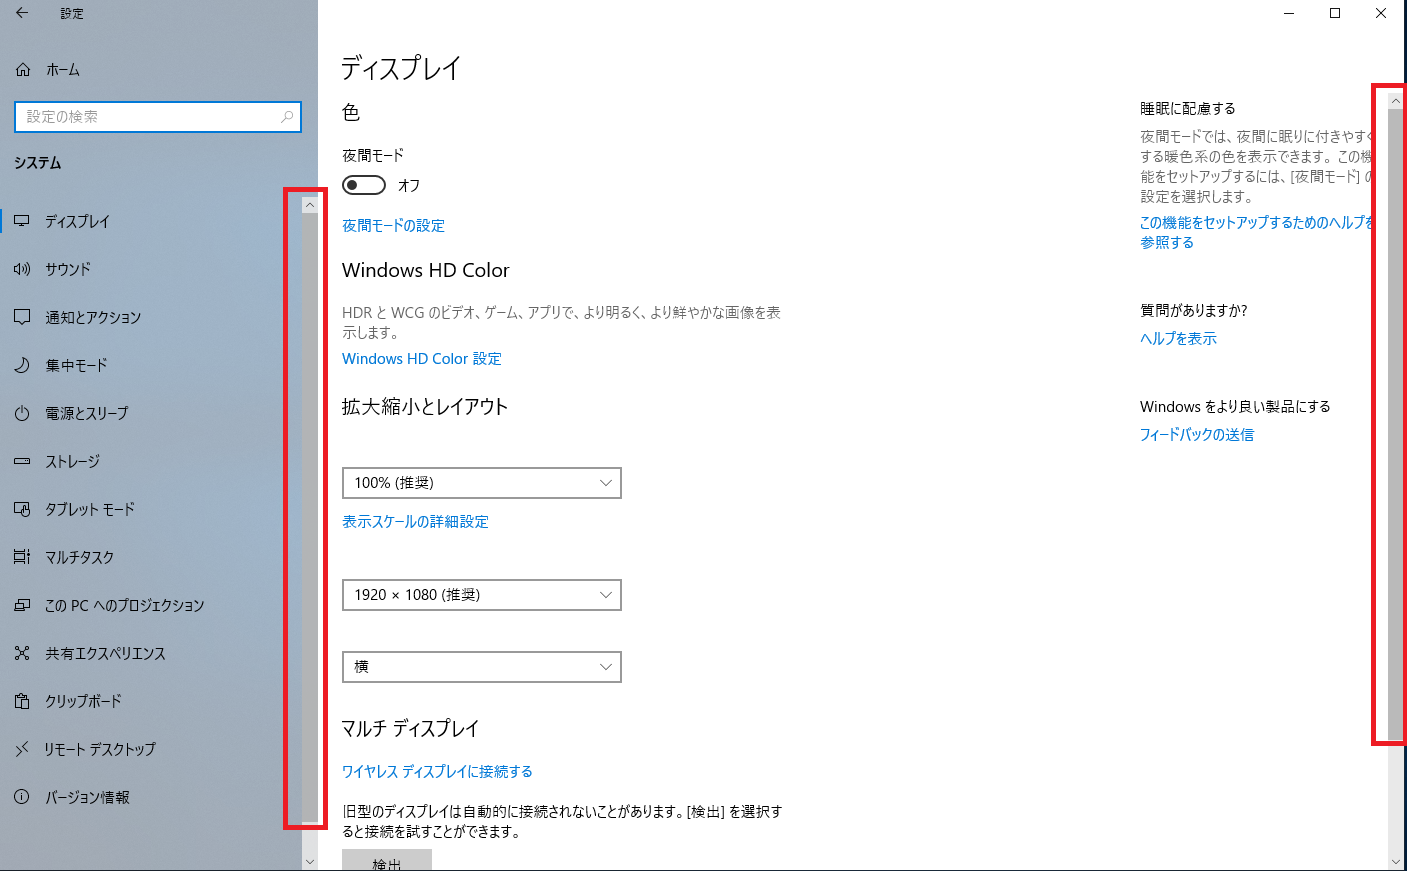 Windows 10 でスクロールバーが表示されている画面